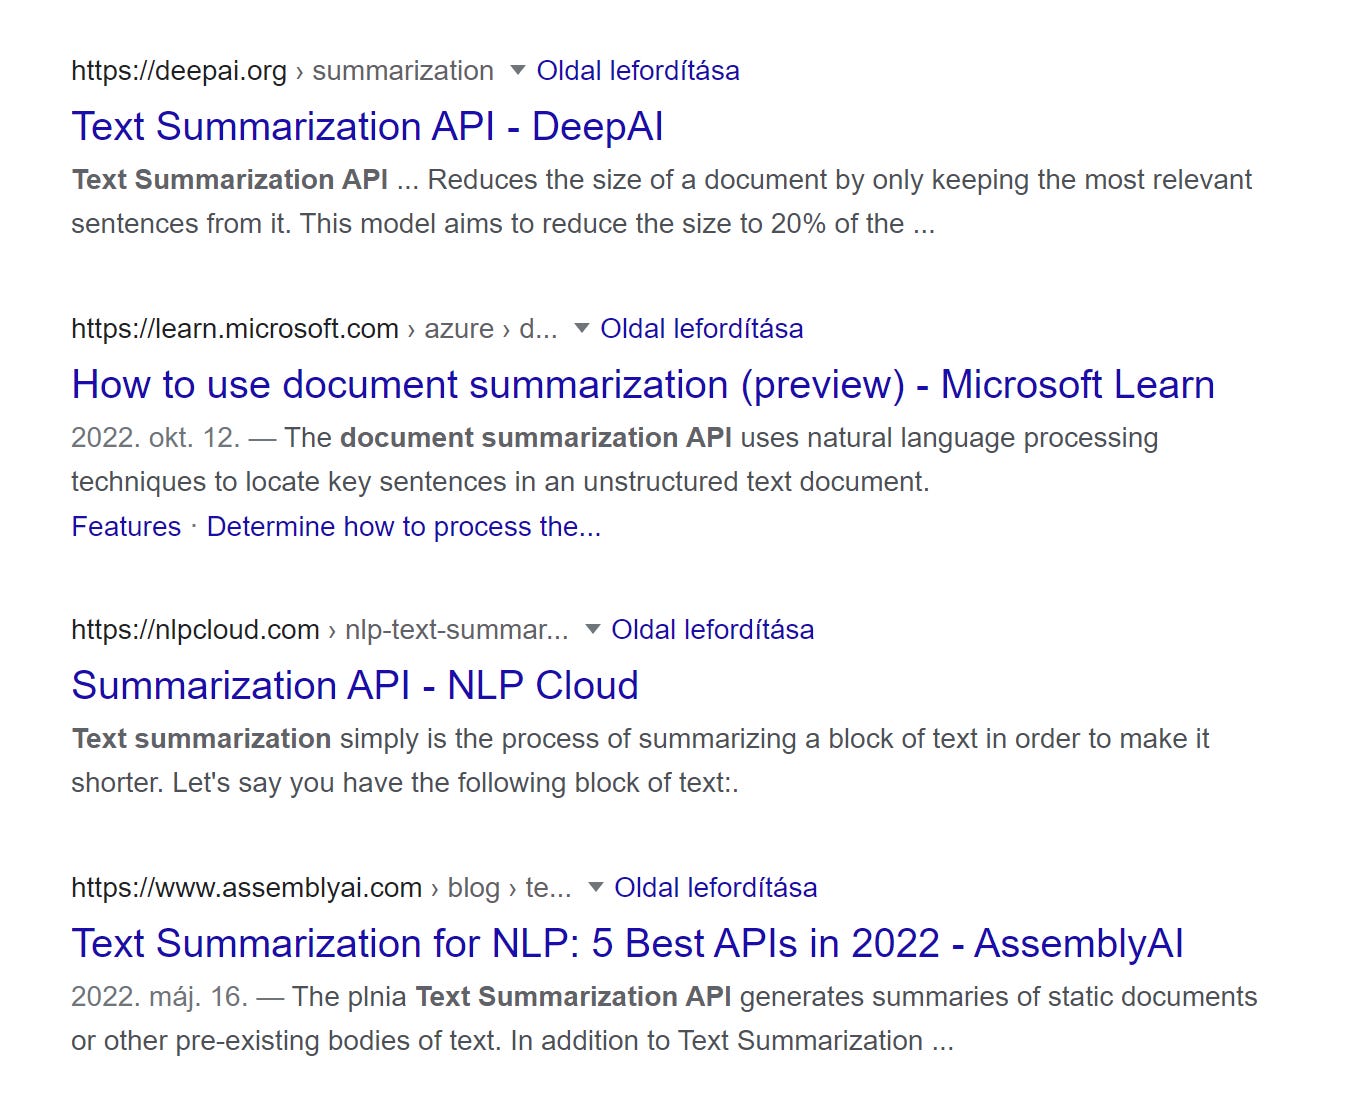 Google resuts from “text summarization API”